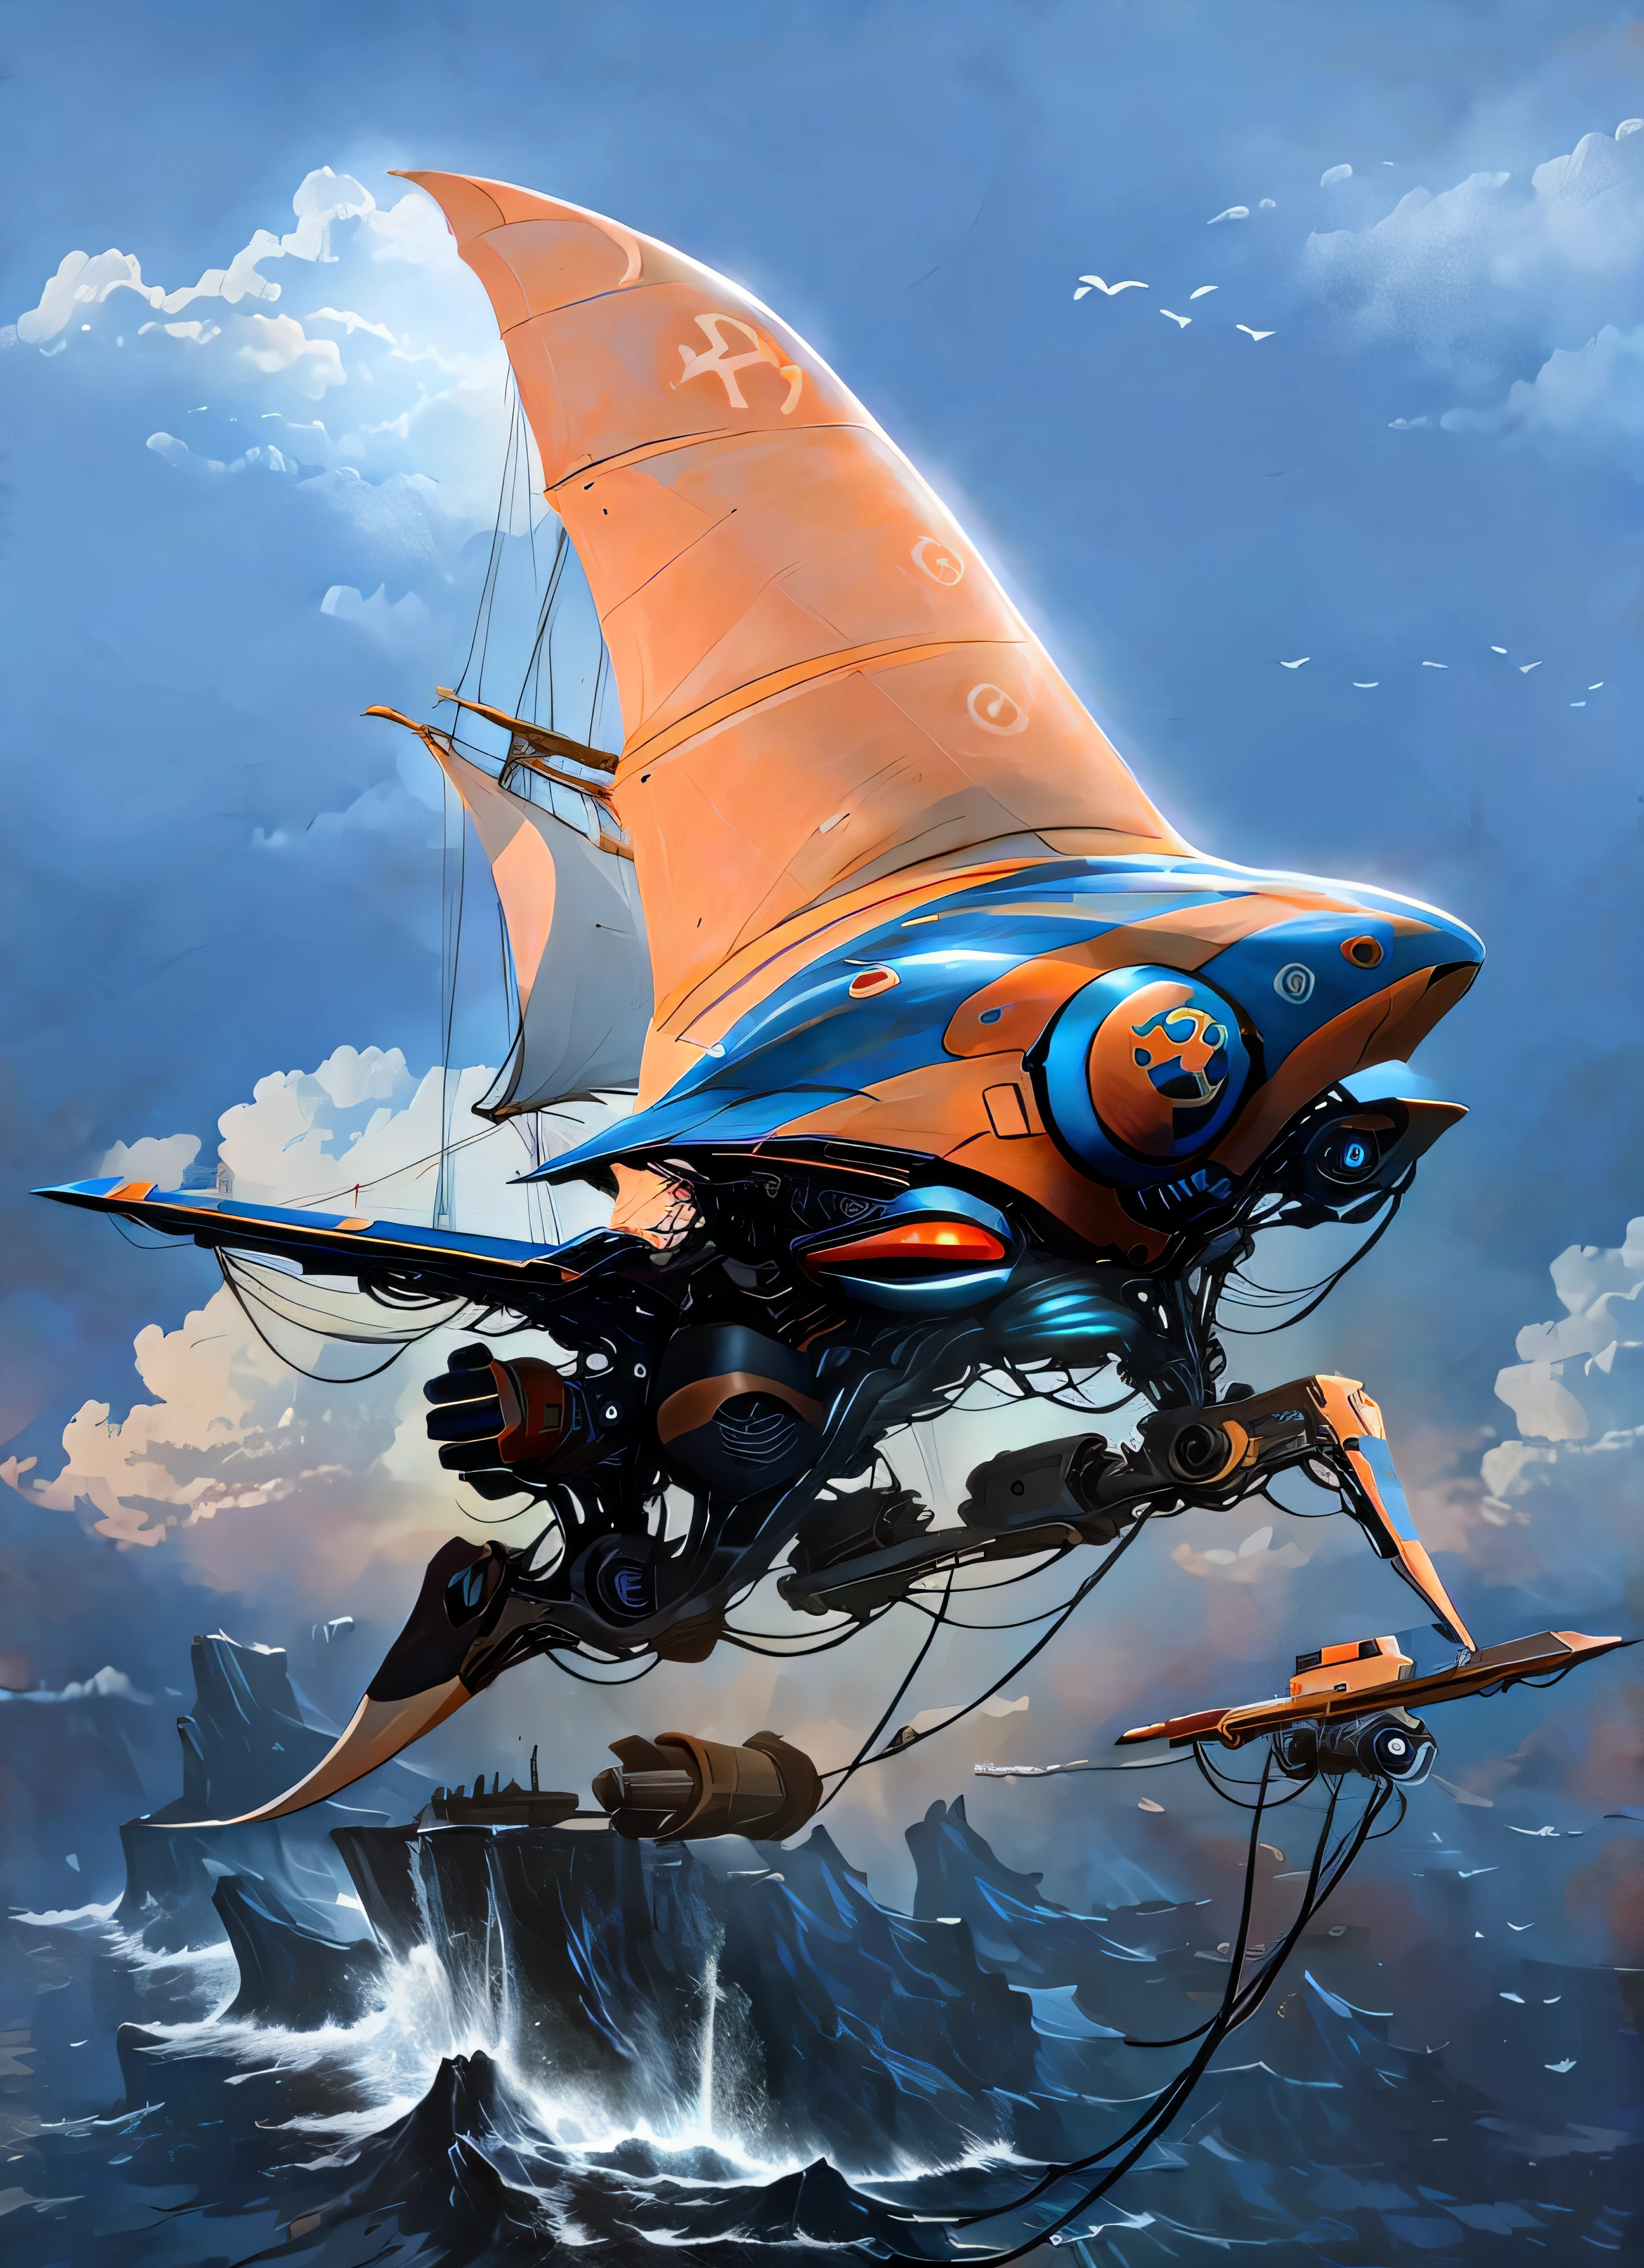 Super veleiro futurista voando entre as nuvens cercado por gaivotas e super tubarões nadando em um mar agitado com enormes ondas ameaçadoras batendo contra falésias de ilhas vulcânicas